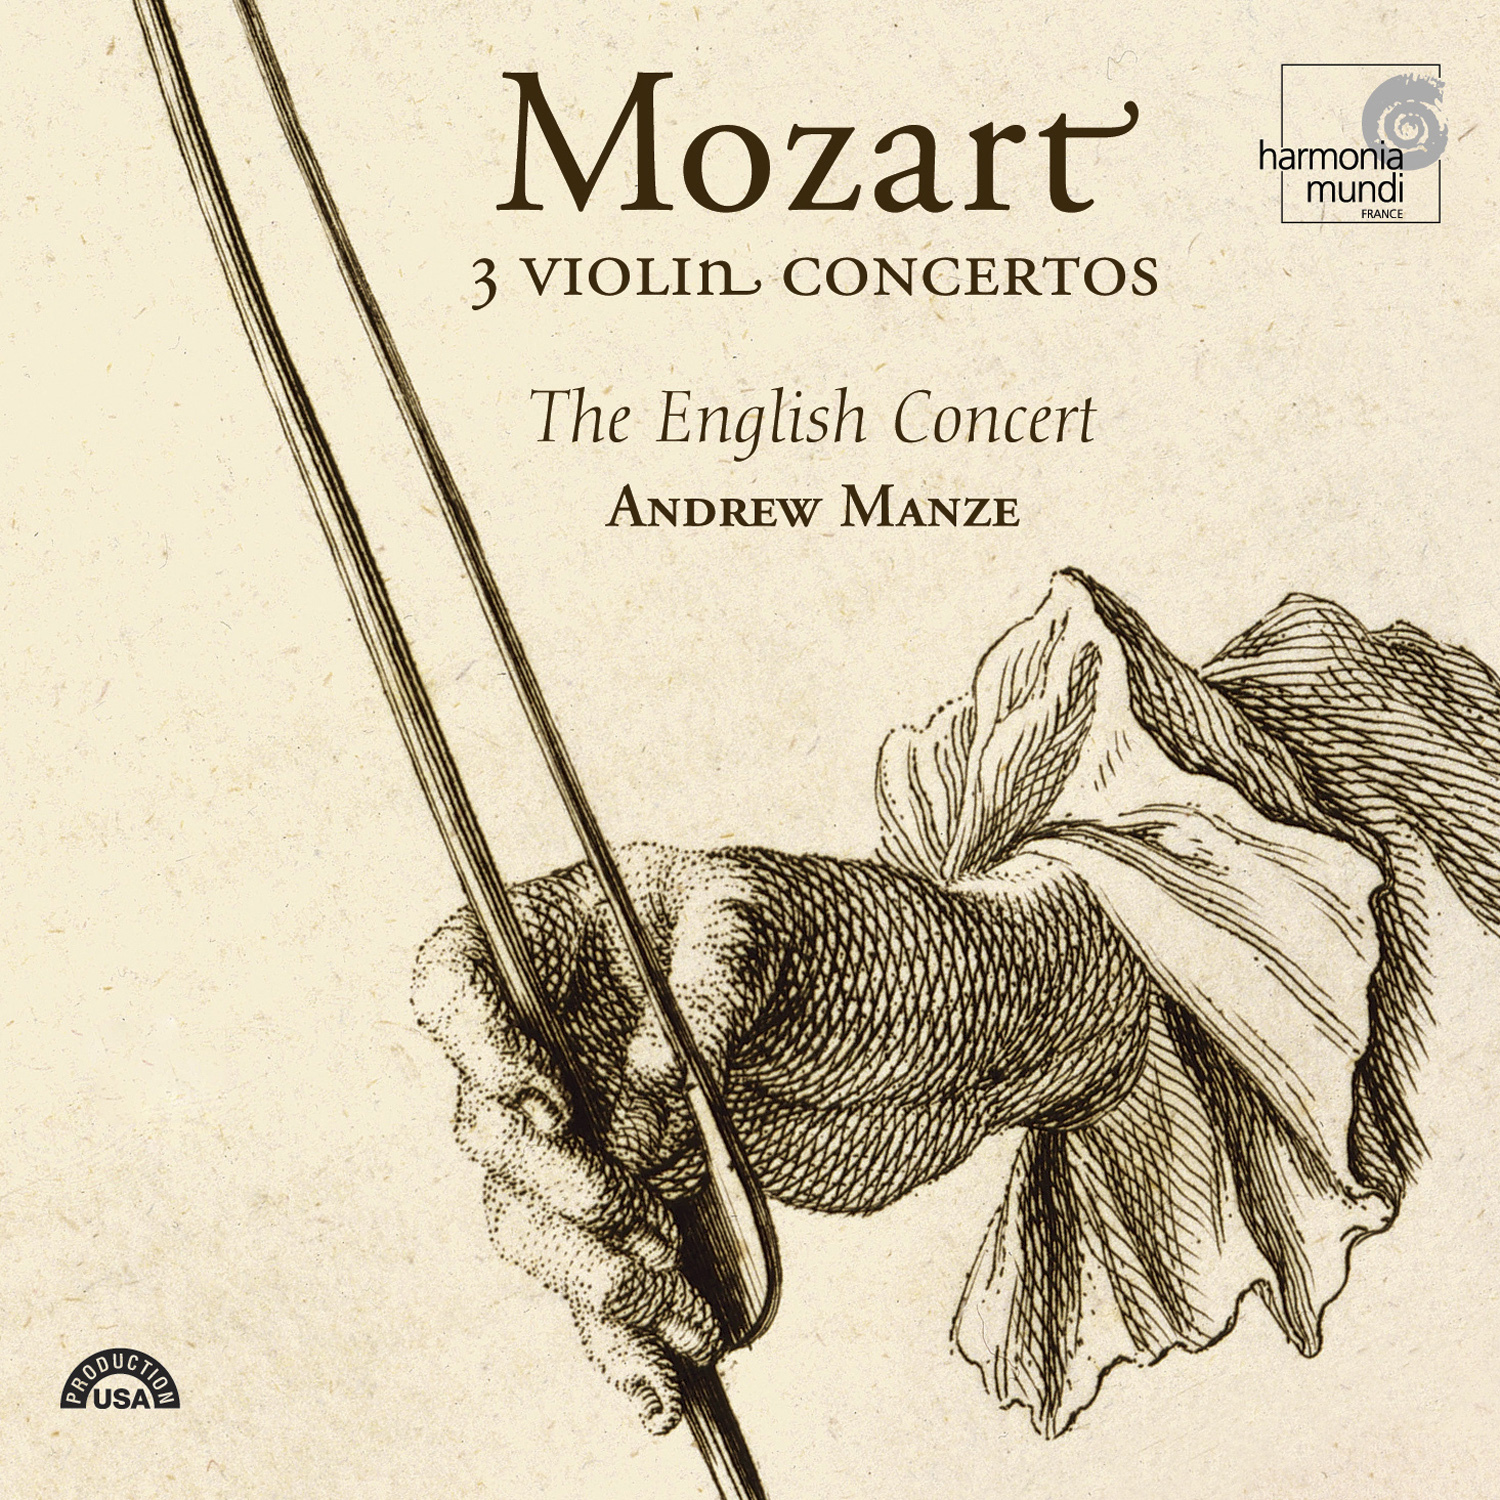 Violin Concerto No. 5 in A major, K. 219: III. Rondo: Tempo di Menuetto - Allegro Tempo di Menuetto